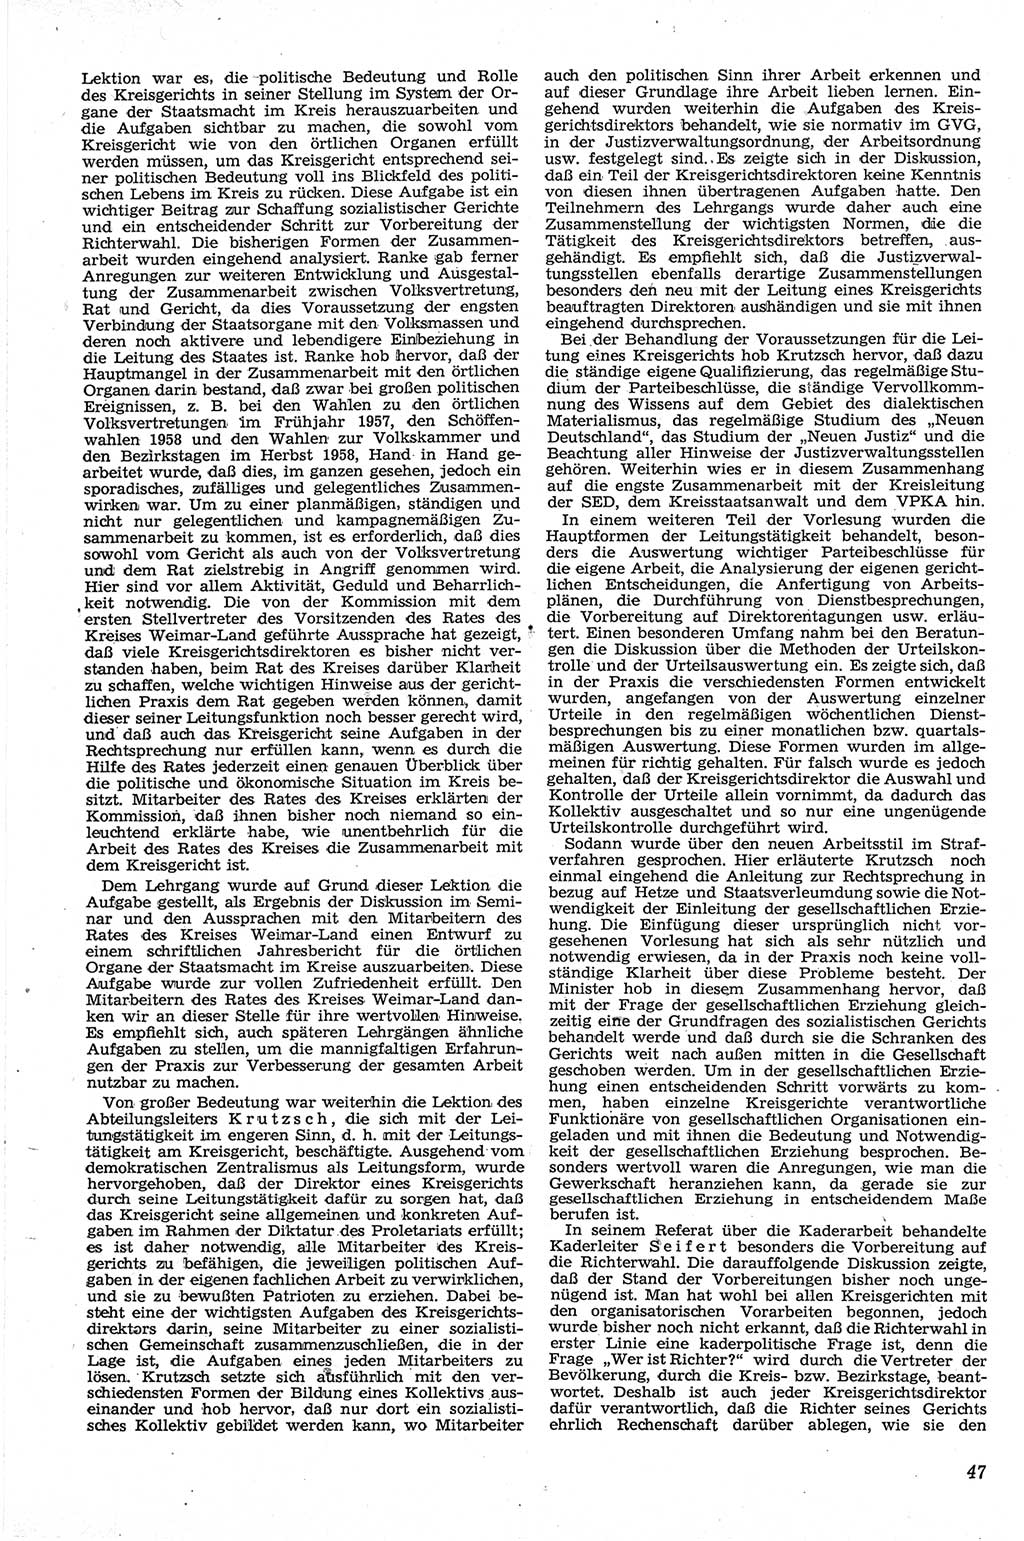 Neue Justiz (NJ), Zeitschrift für Recht und Rechtswissenschaft [Deutsche Demokratische Republik (DDR)], 13. Jahrgang 1959, Seite 47 (NJ DDR 1959, S. 47)